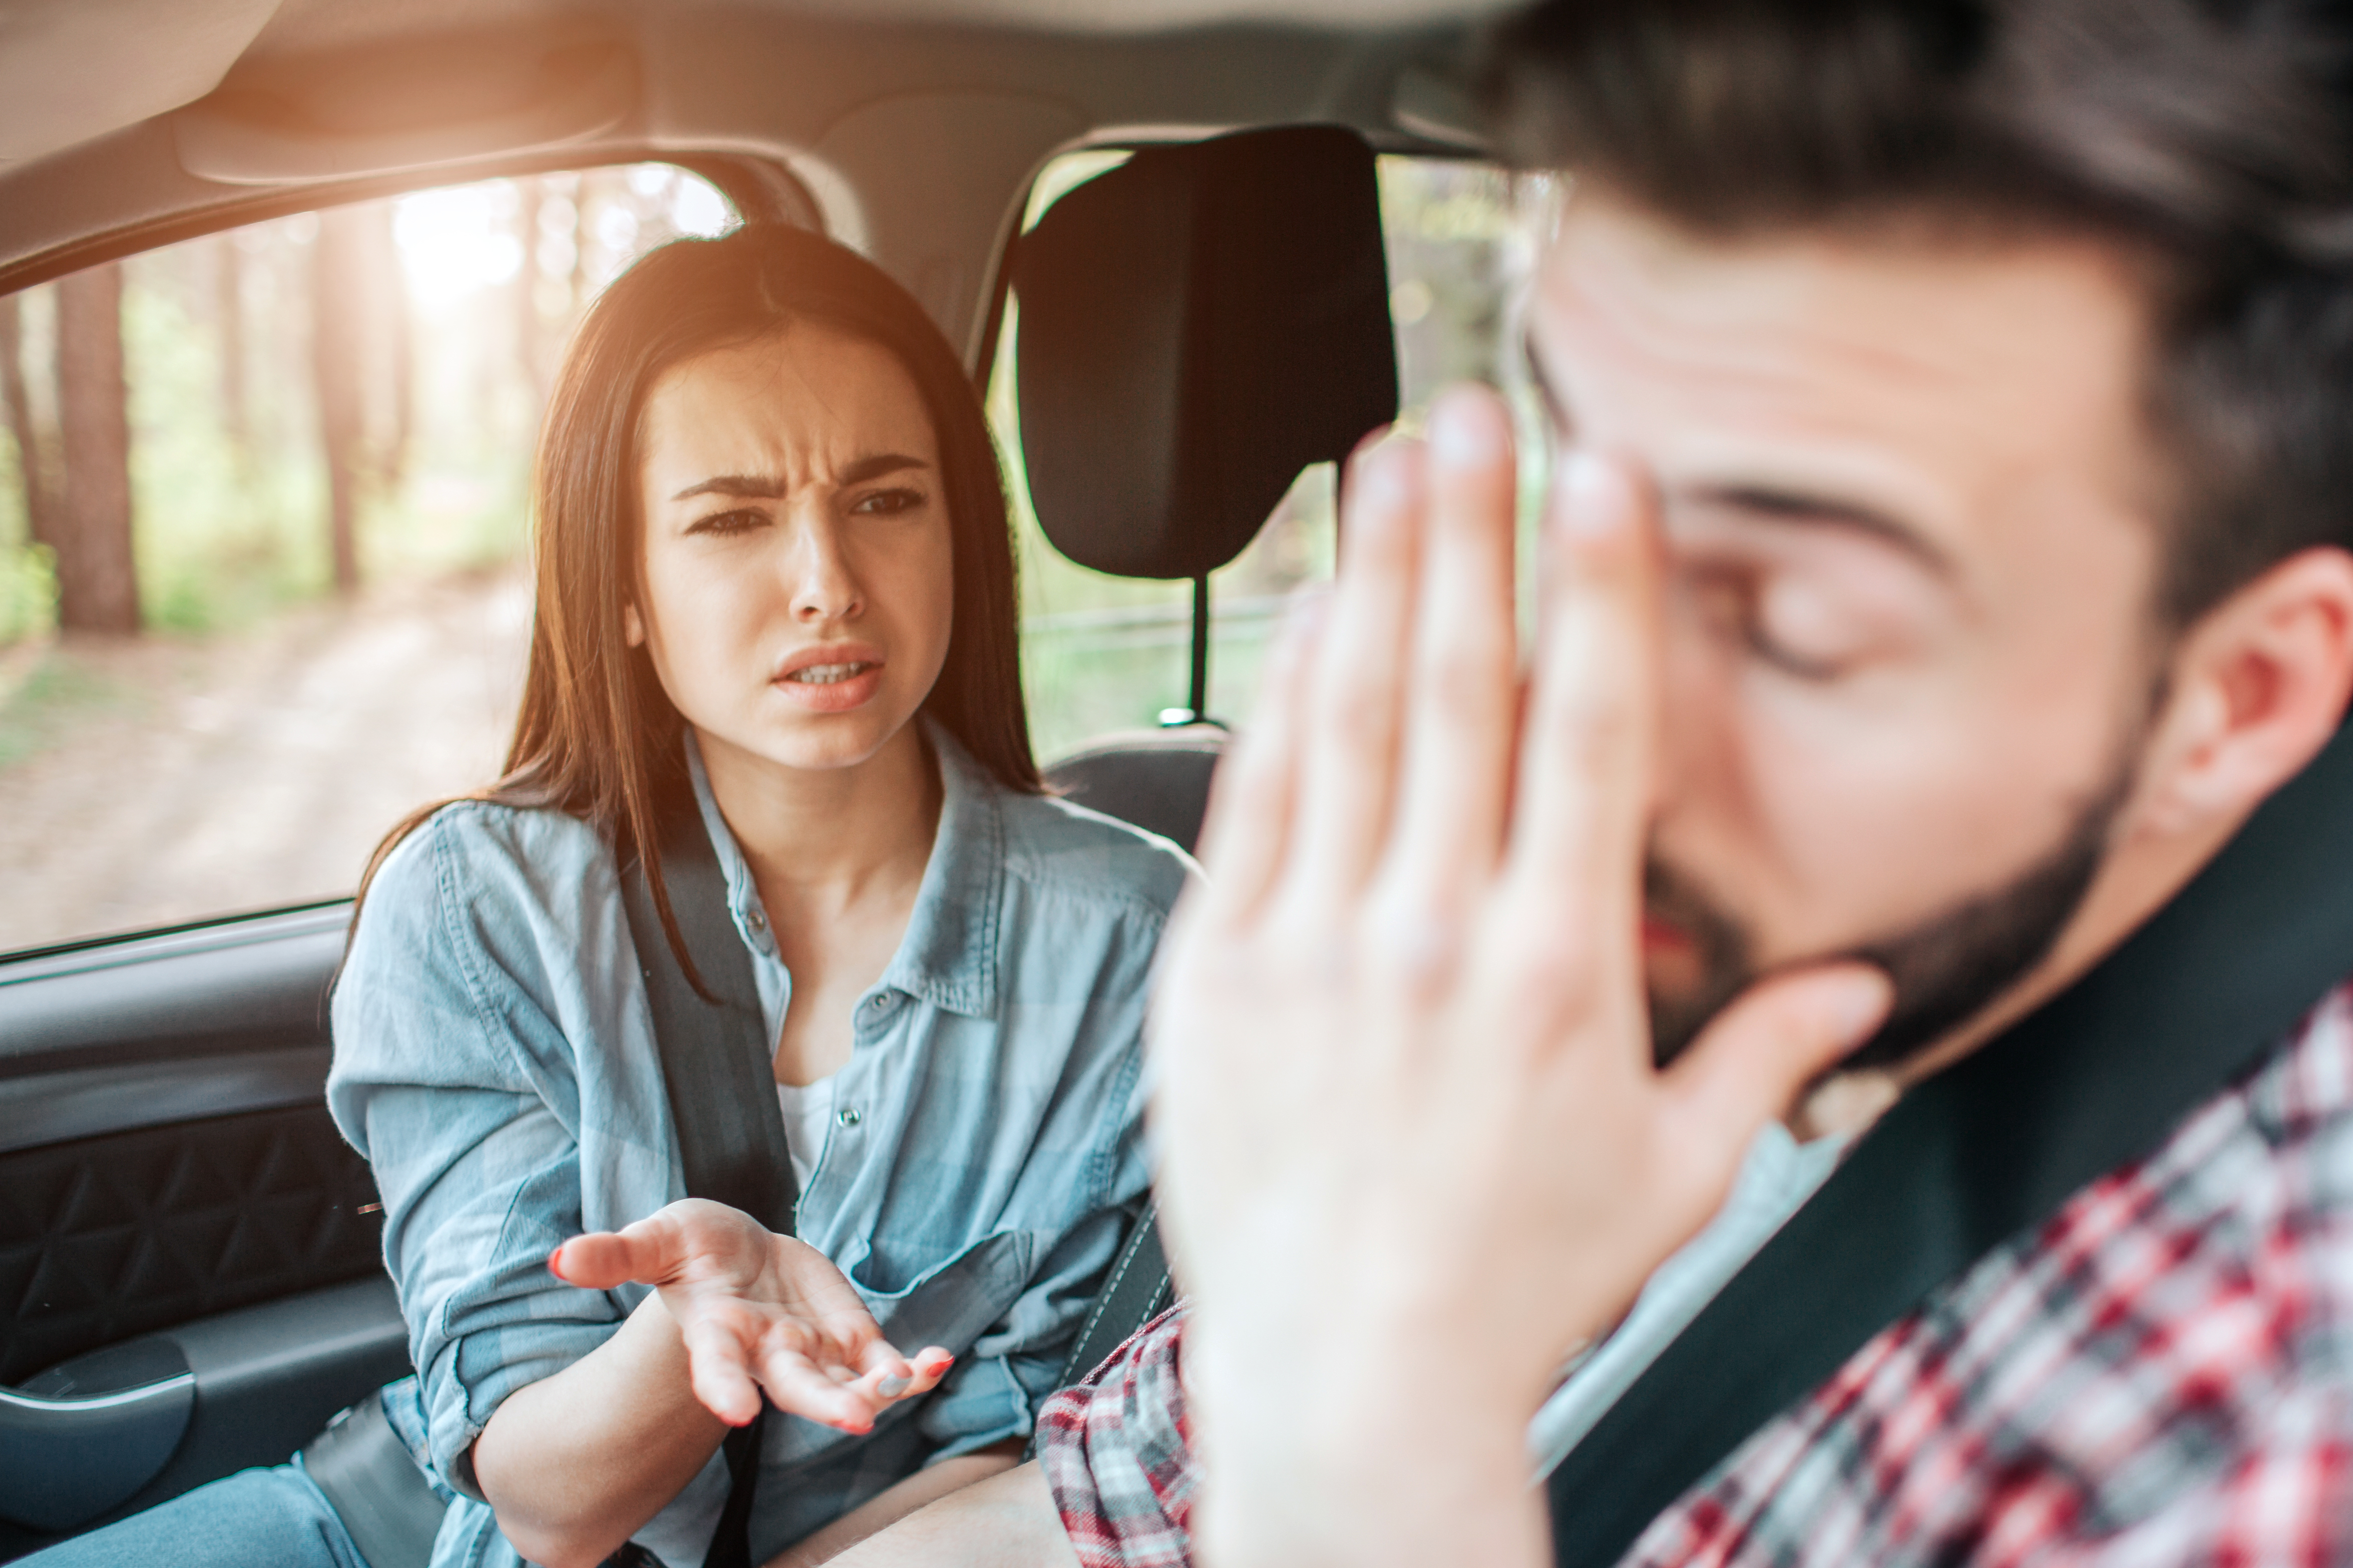 Ein streitendes Paar im Auto | Quelle: Shutterstock